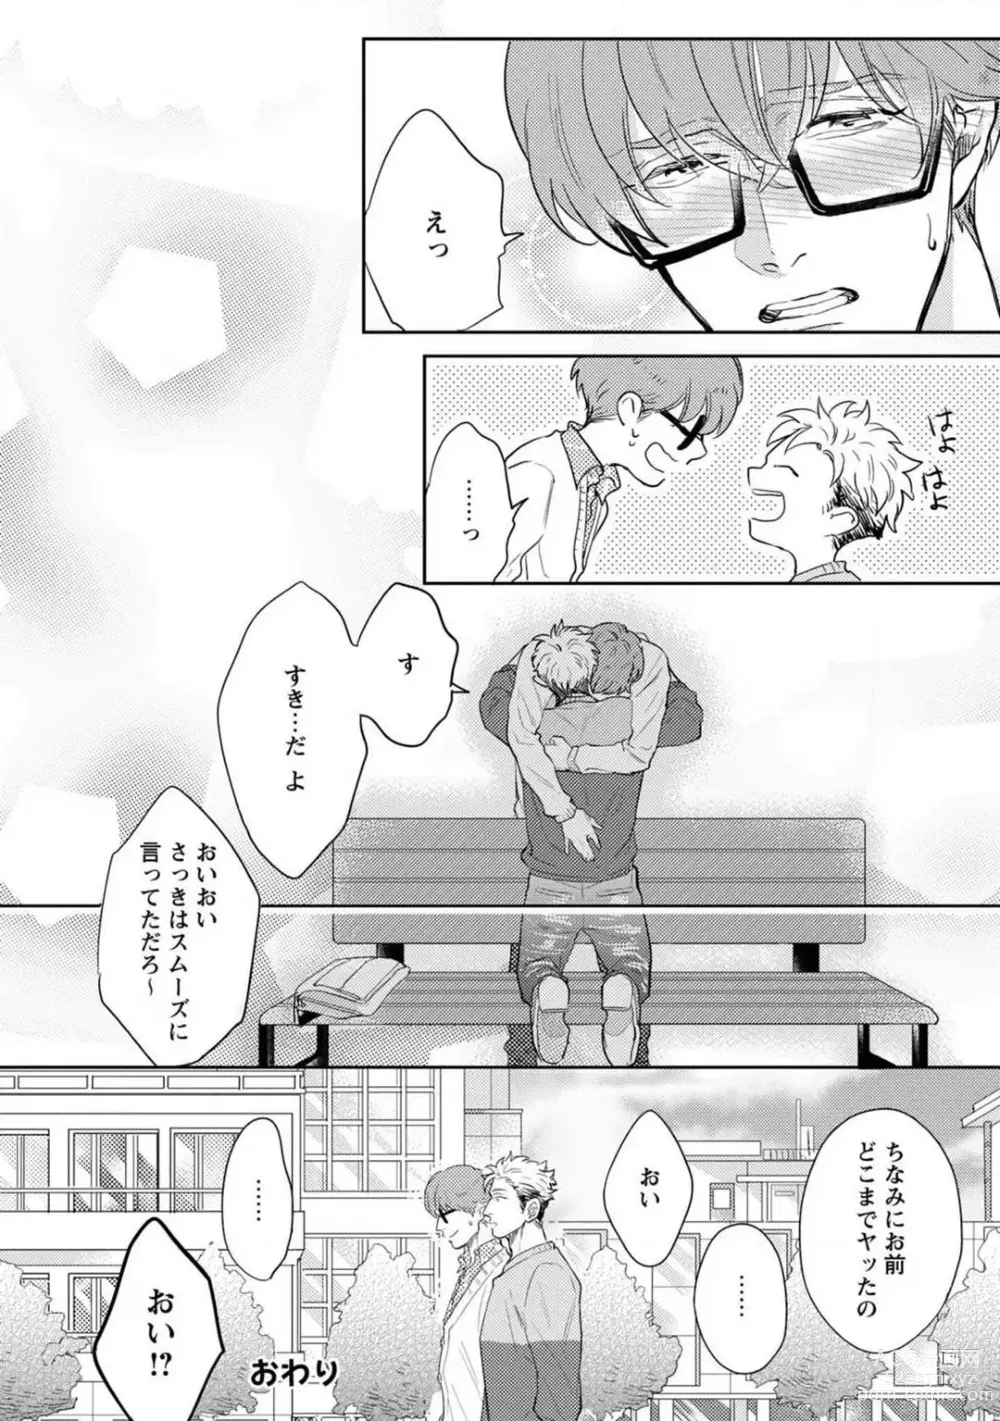 Page 47 of manga Kimi no Shiranai xx